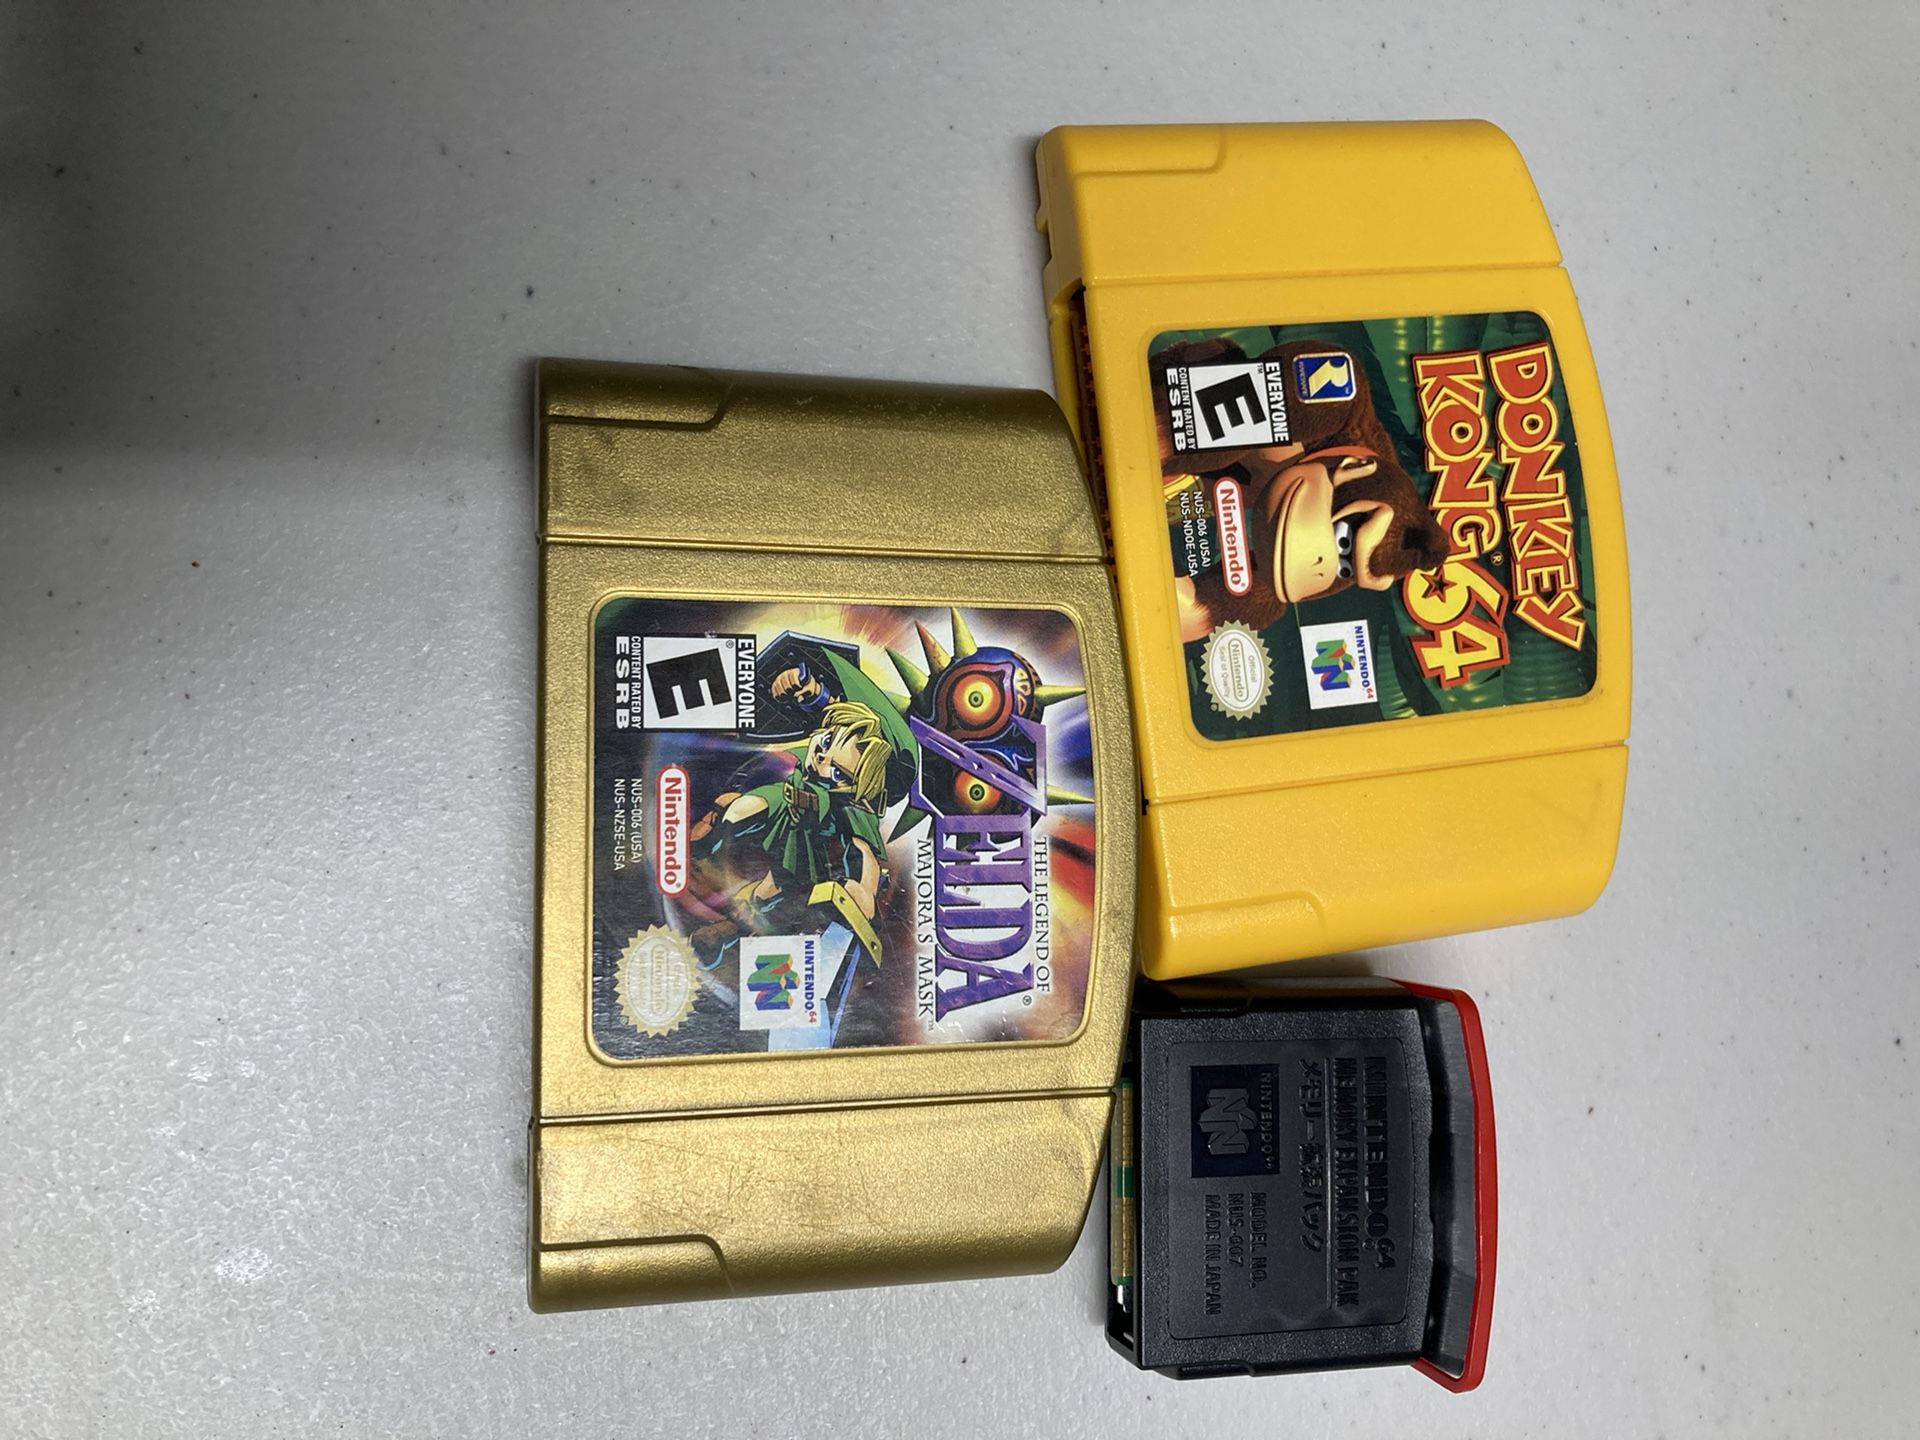 Nintendo 64 games donkey Kong 64 expansion pak legend of Zelda( majora’s mask cracked case)